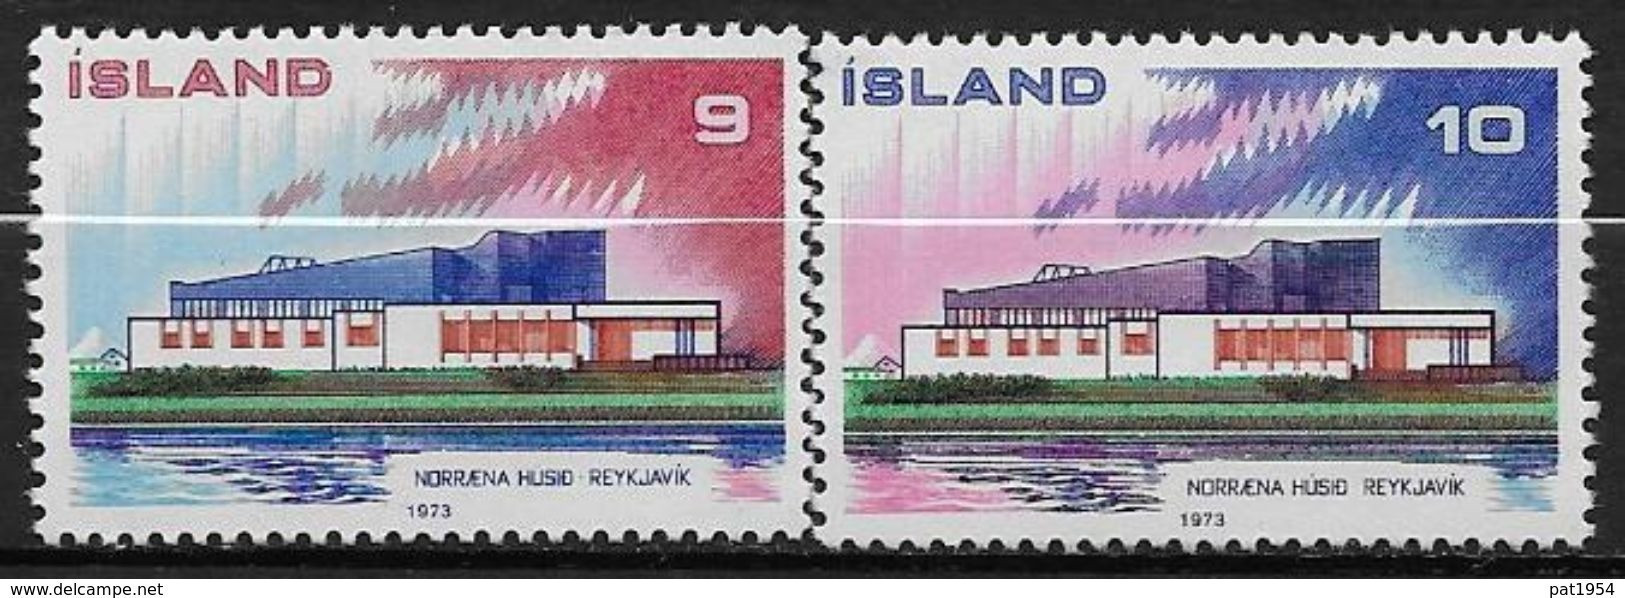 Islande 1973 N° 431/432  Neufs ** MNH émission Pays Nordiques, Norden - Ungebraucht